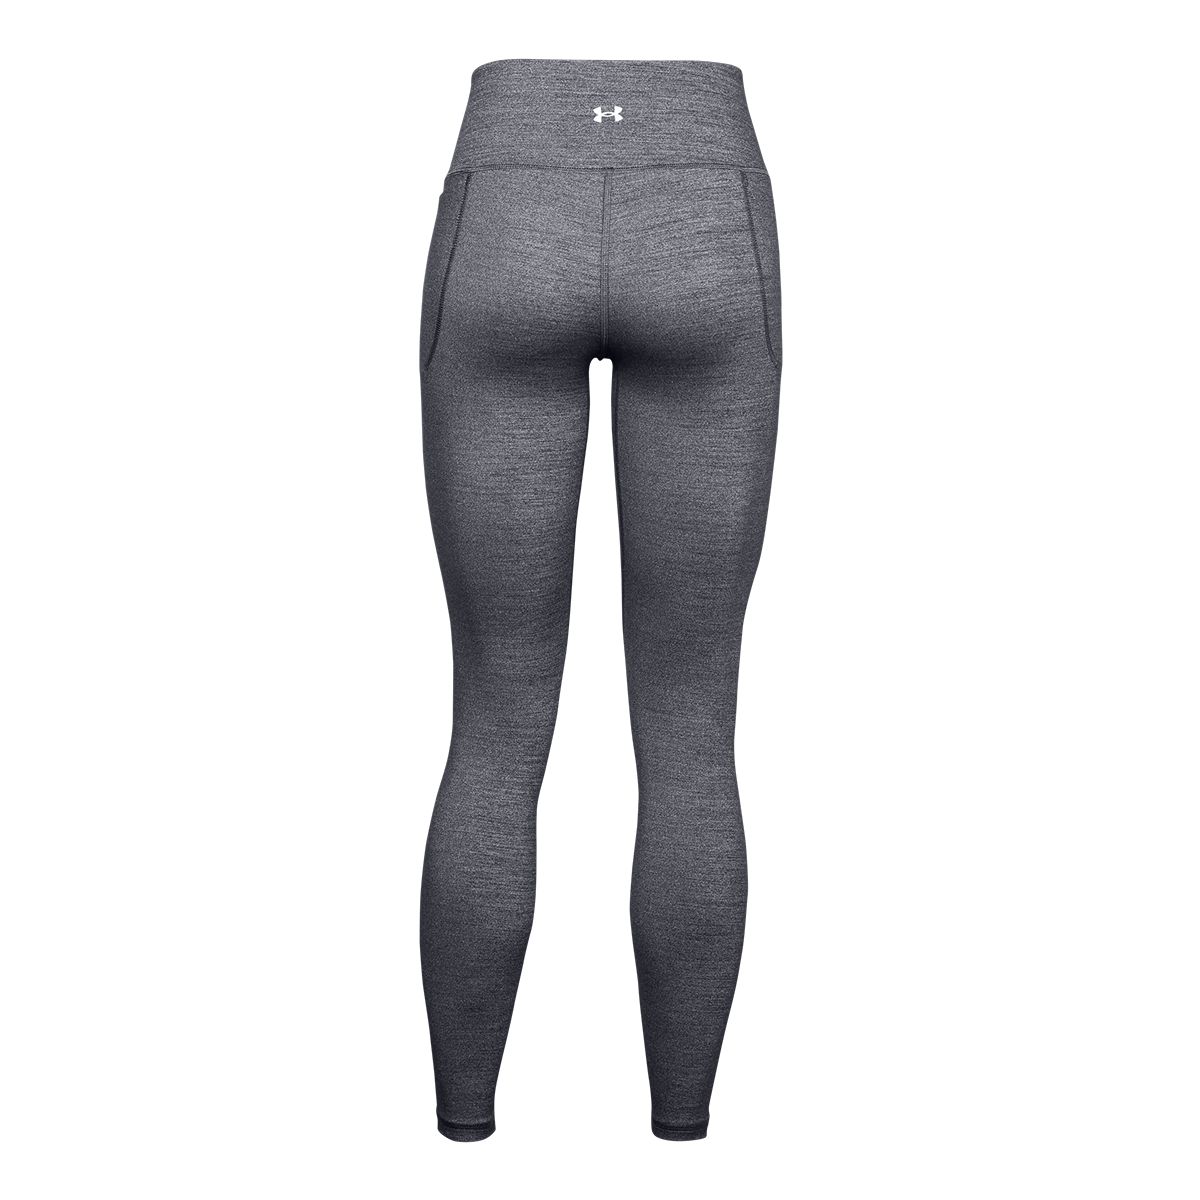 Buy Under Armour Women's UA Favorite Wordmark Leggings (Carbon  Heather/Carbon Heather/Black, Size XL) Online